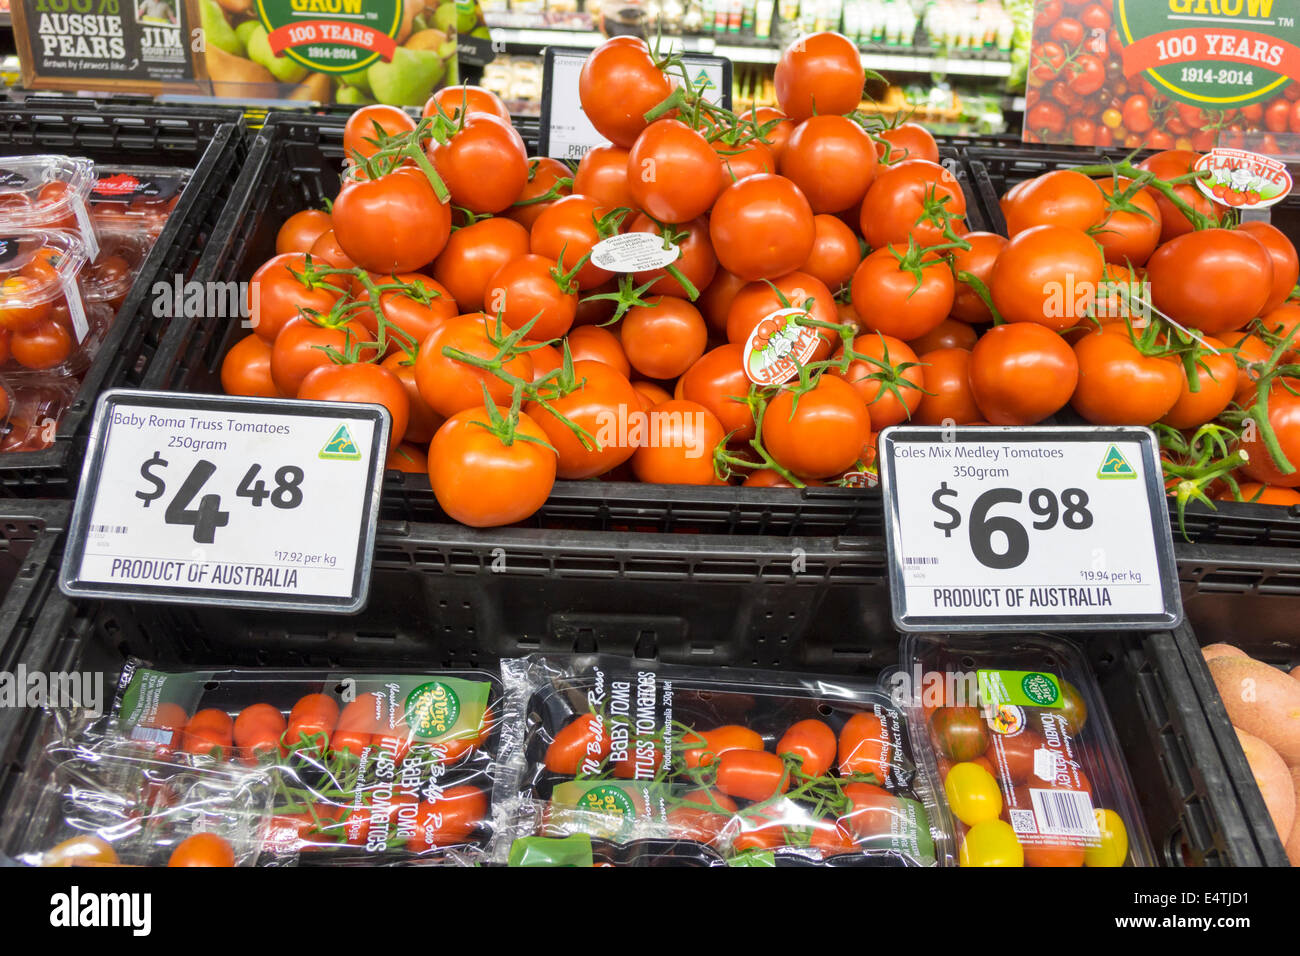 Melbourne Australien, Coles Central, Lebensmittelgeschäft, Supermarkt, Lebensmittel, Display-Verkauf produzieren, Tomaten, AU140319165 Stockfoto